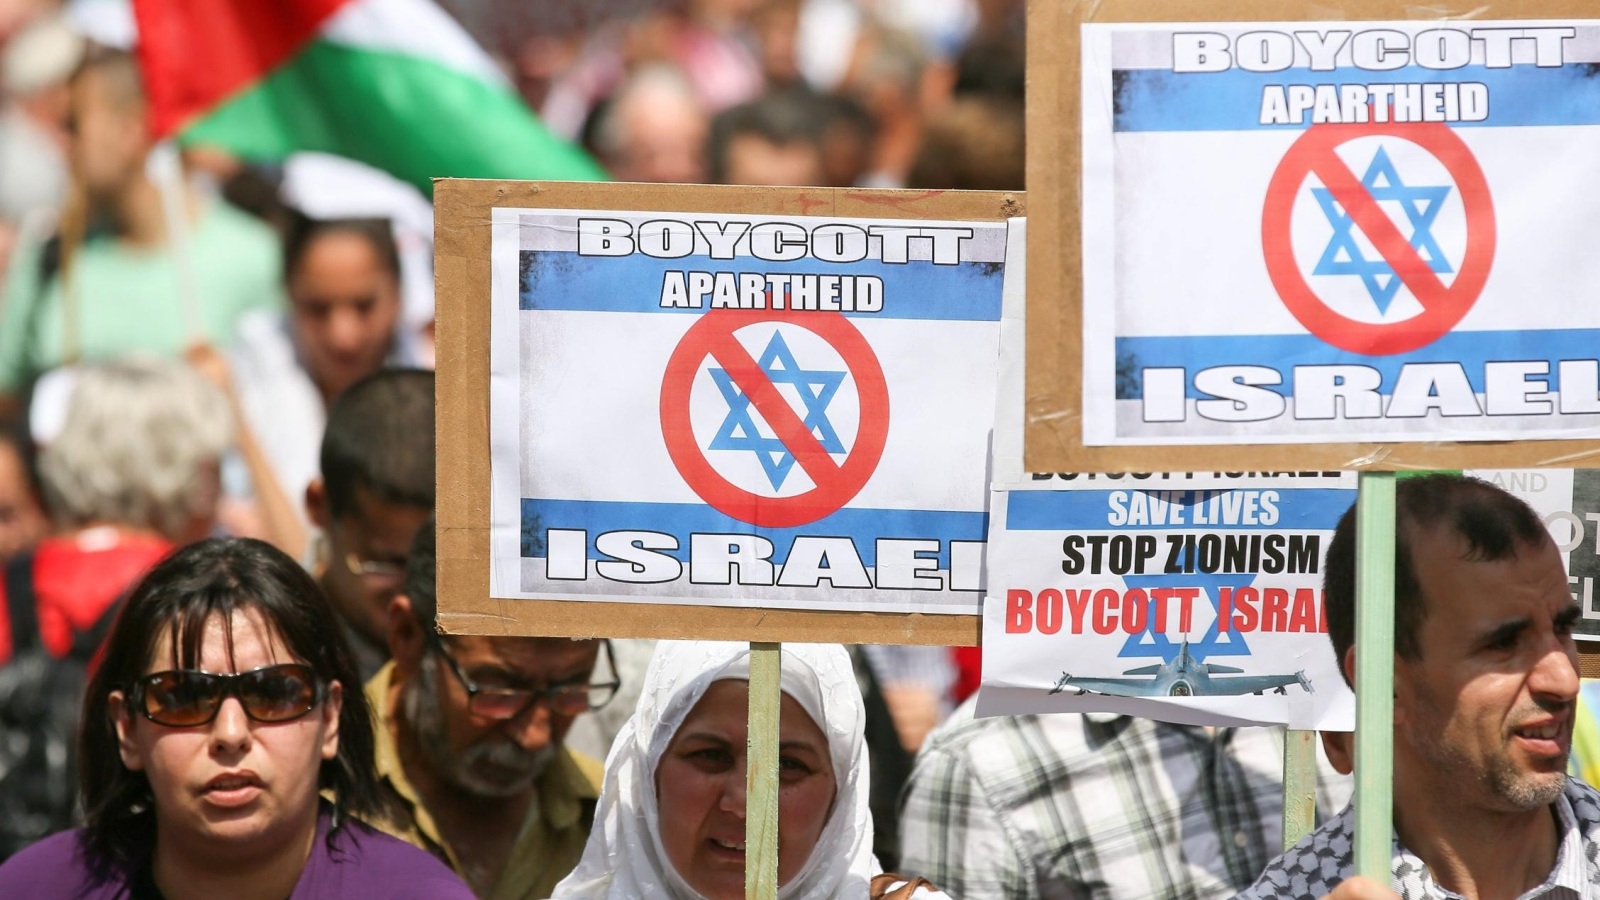 مسيرة سابقة في بلجيكا تضامنا مع الفلسطينيين تحت الاحتلال الإسرائيلي (الأوروبية)